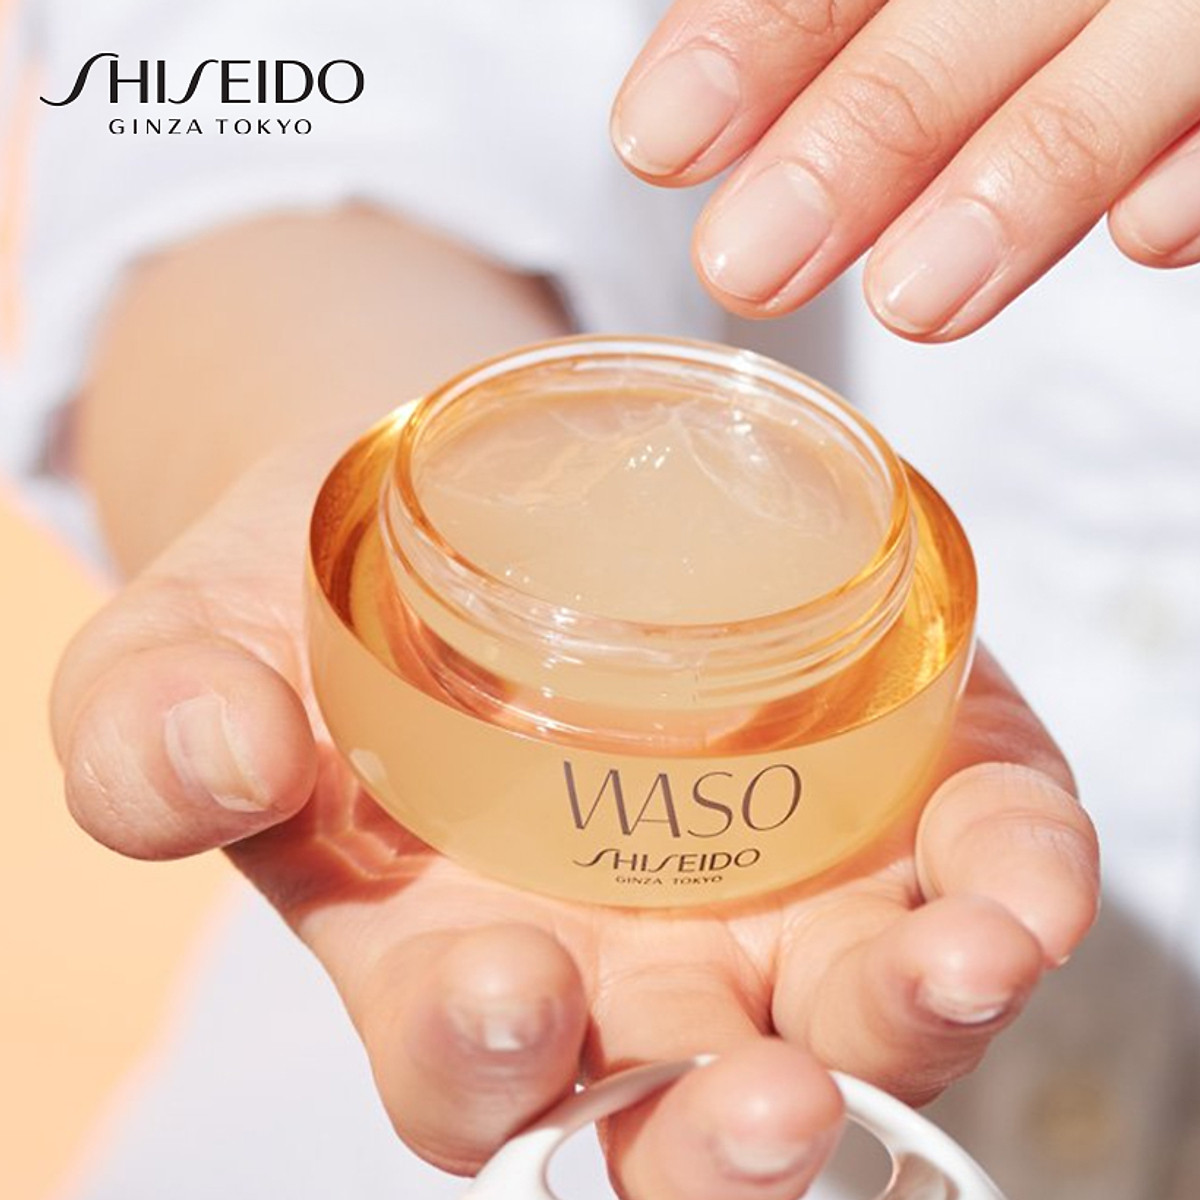 Shiseido Waso Clear Mega - Hydrating Cream cung cấp dưỡng chất và độ ẩm cho làn da đến 24 tiếng